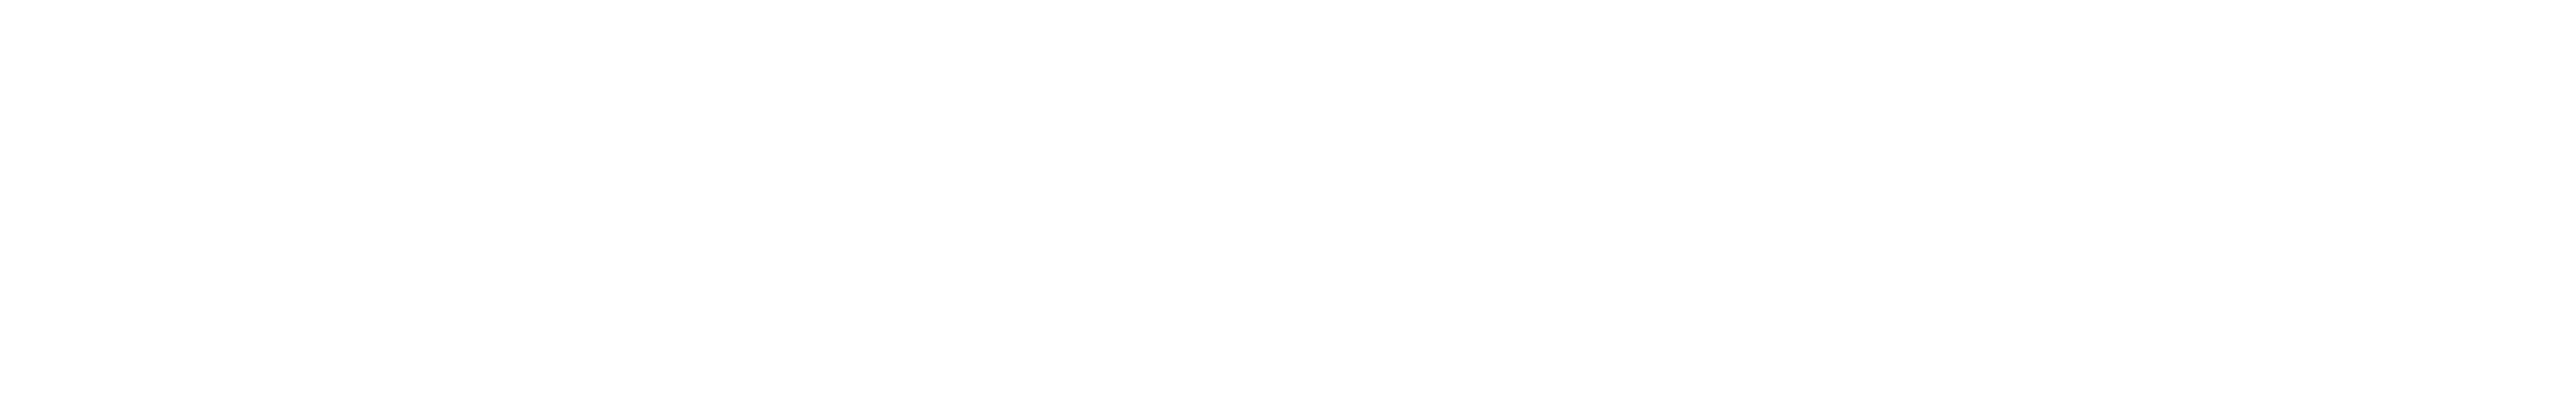 Logos UE, Plan Next Generation